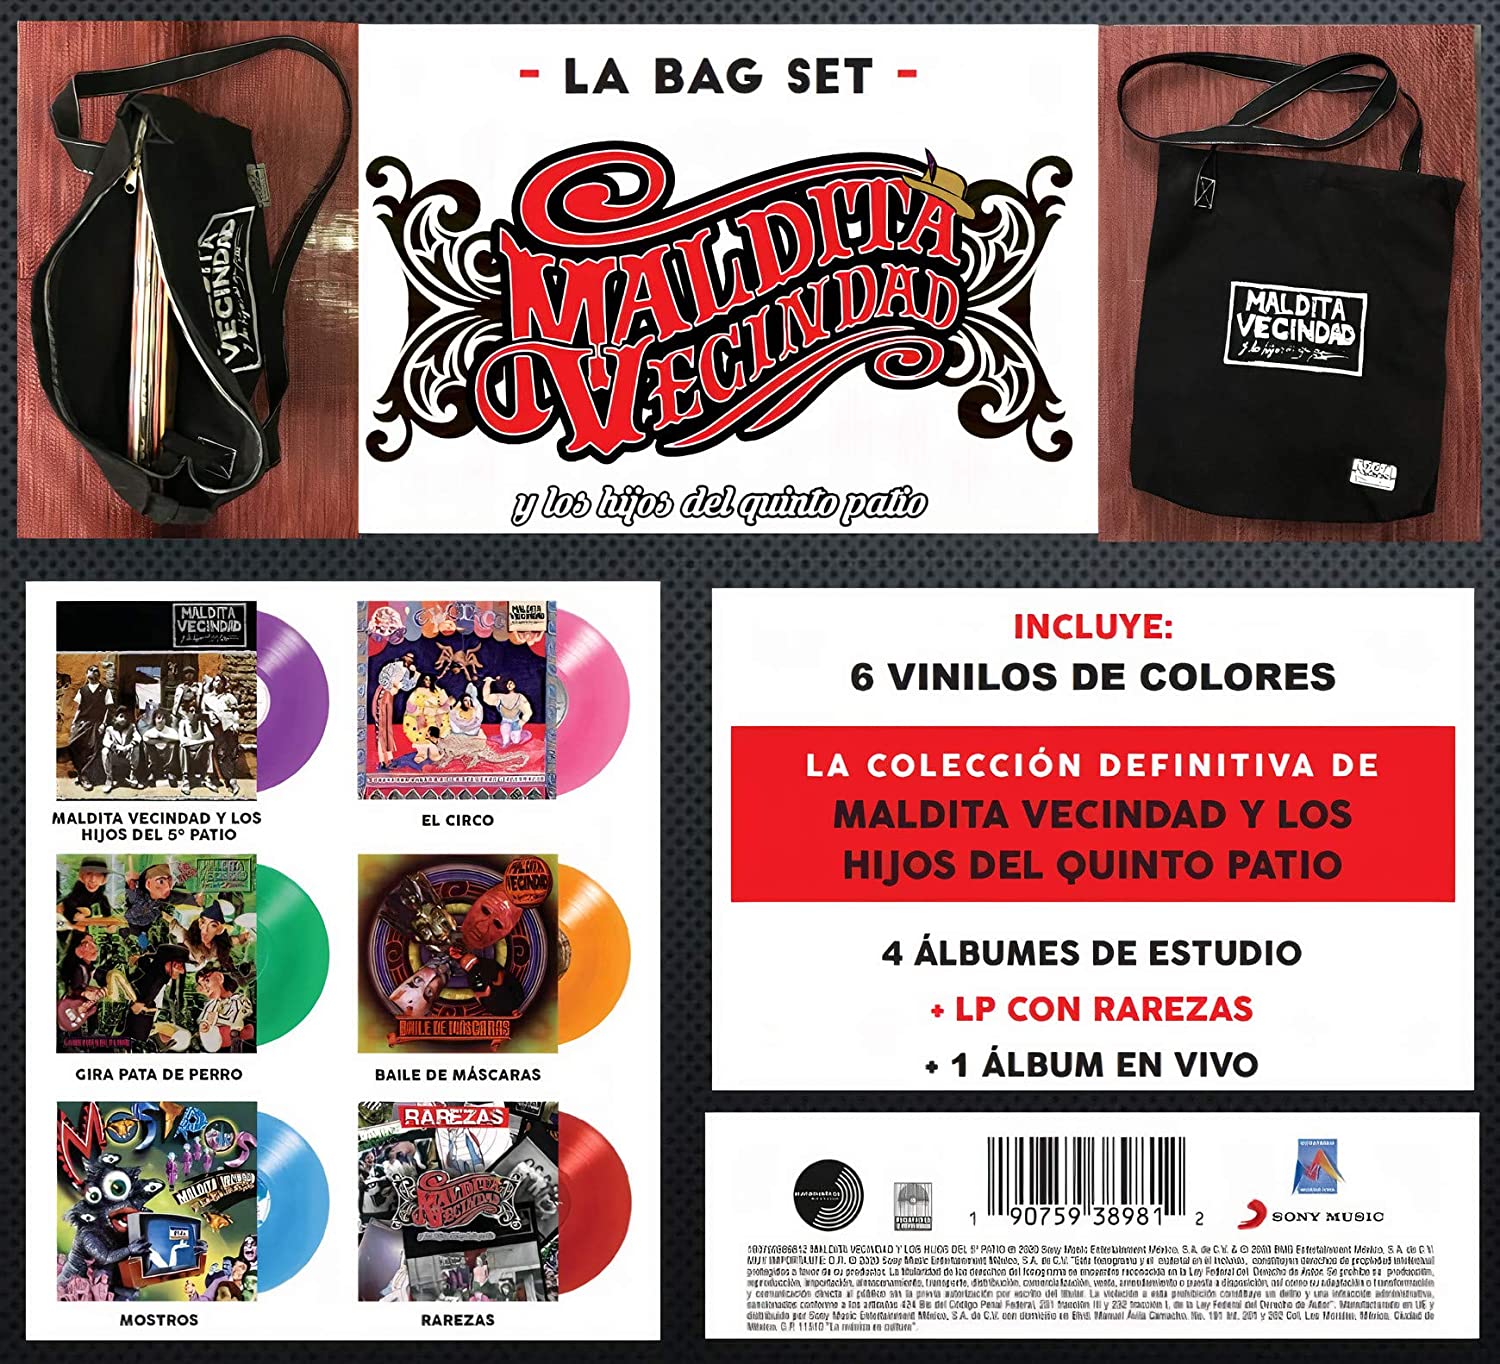 Maldita Vecindad / La Bag Set